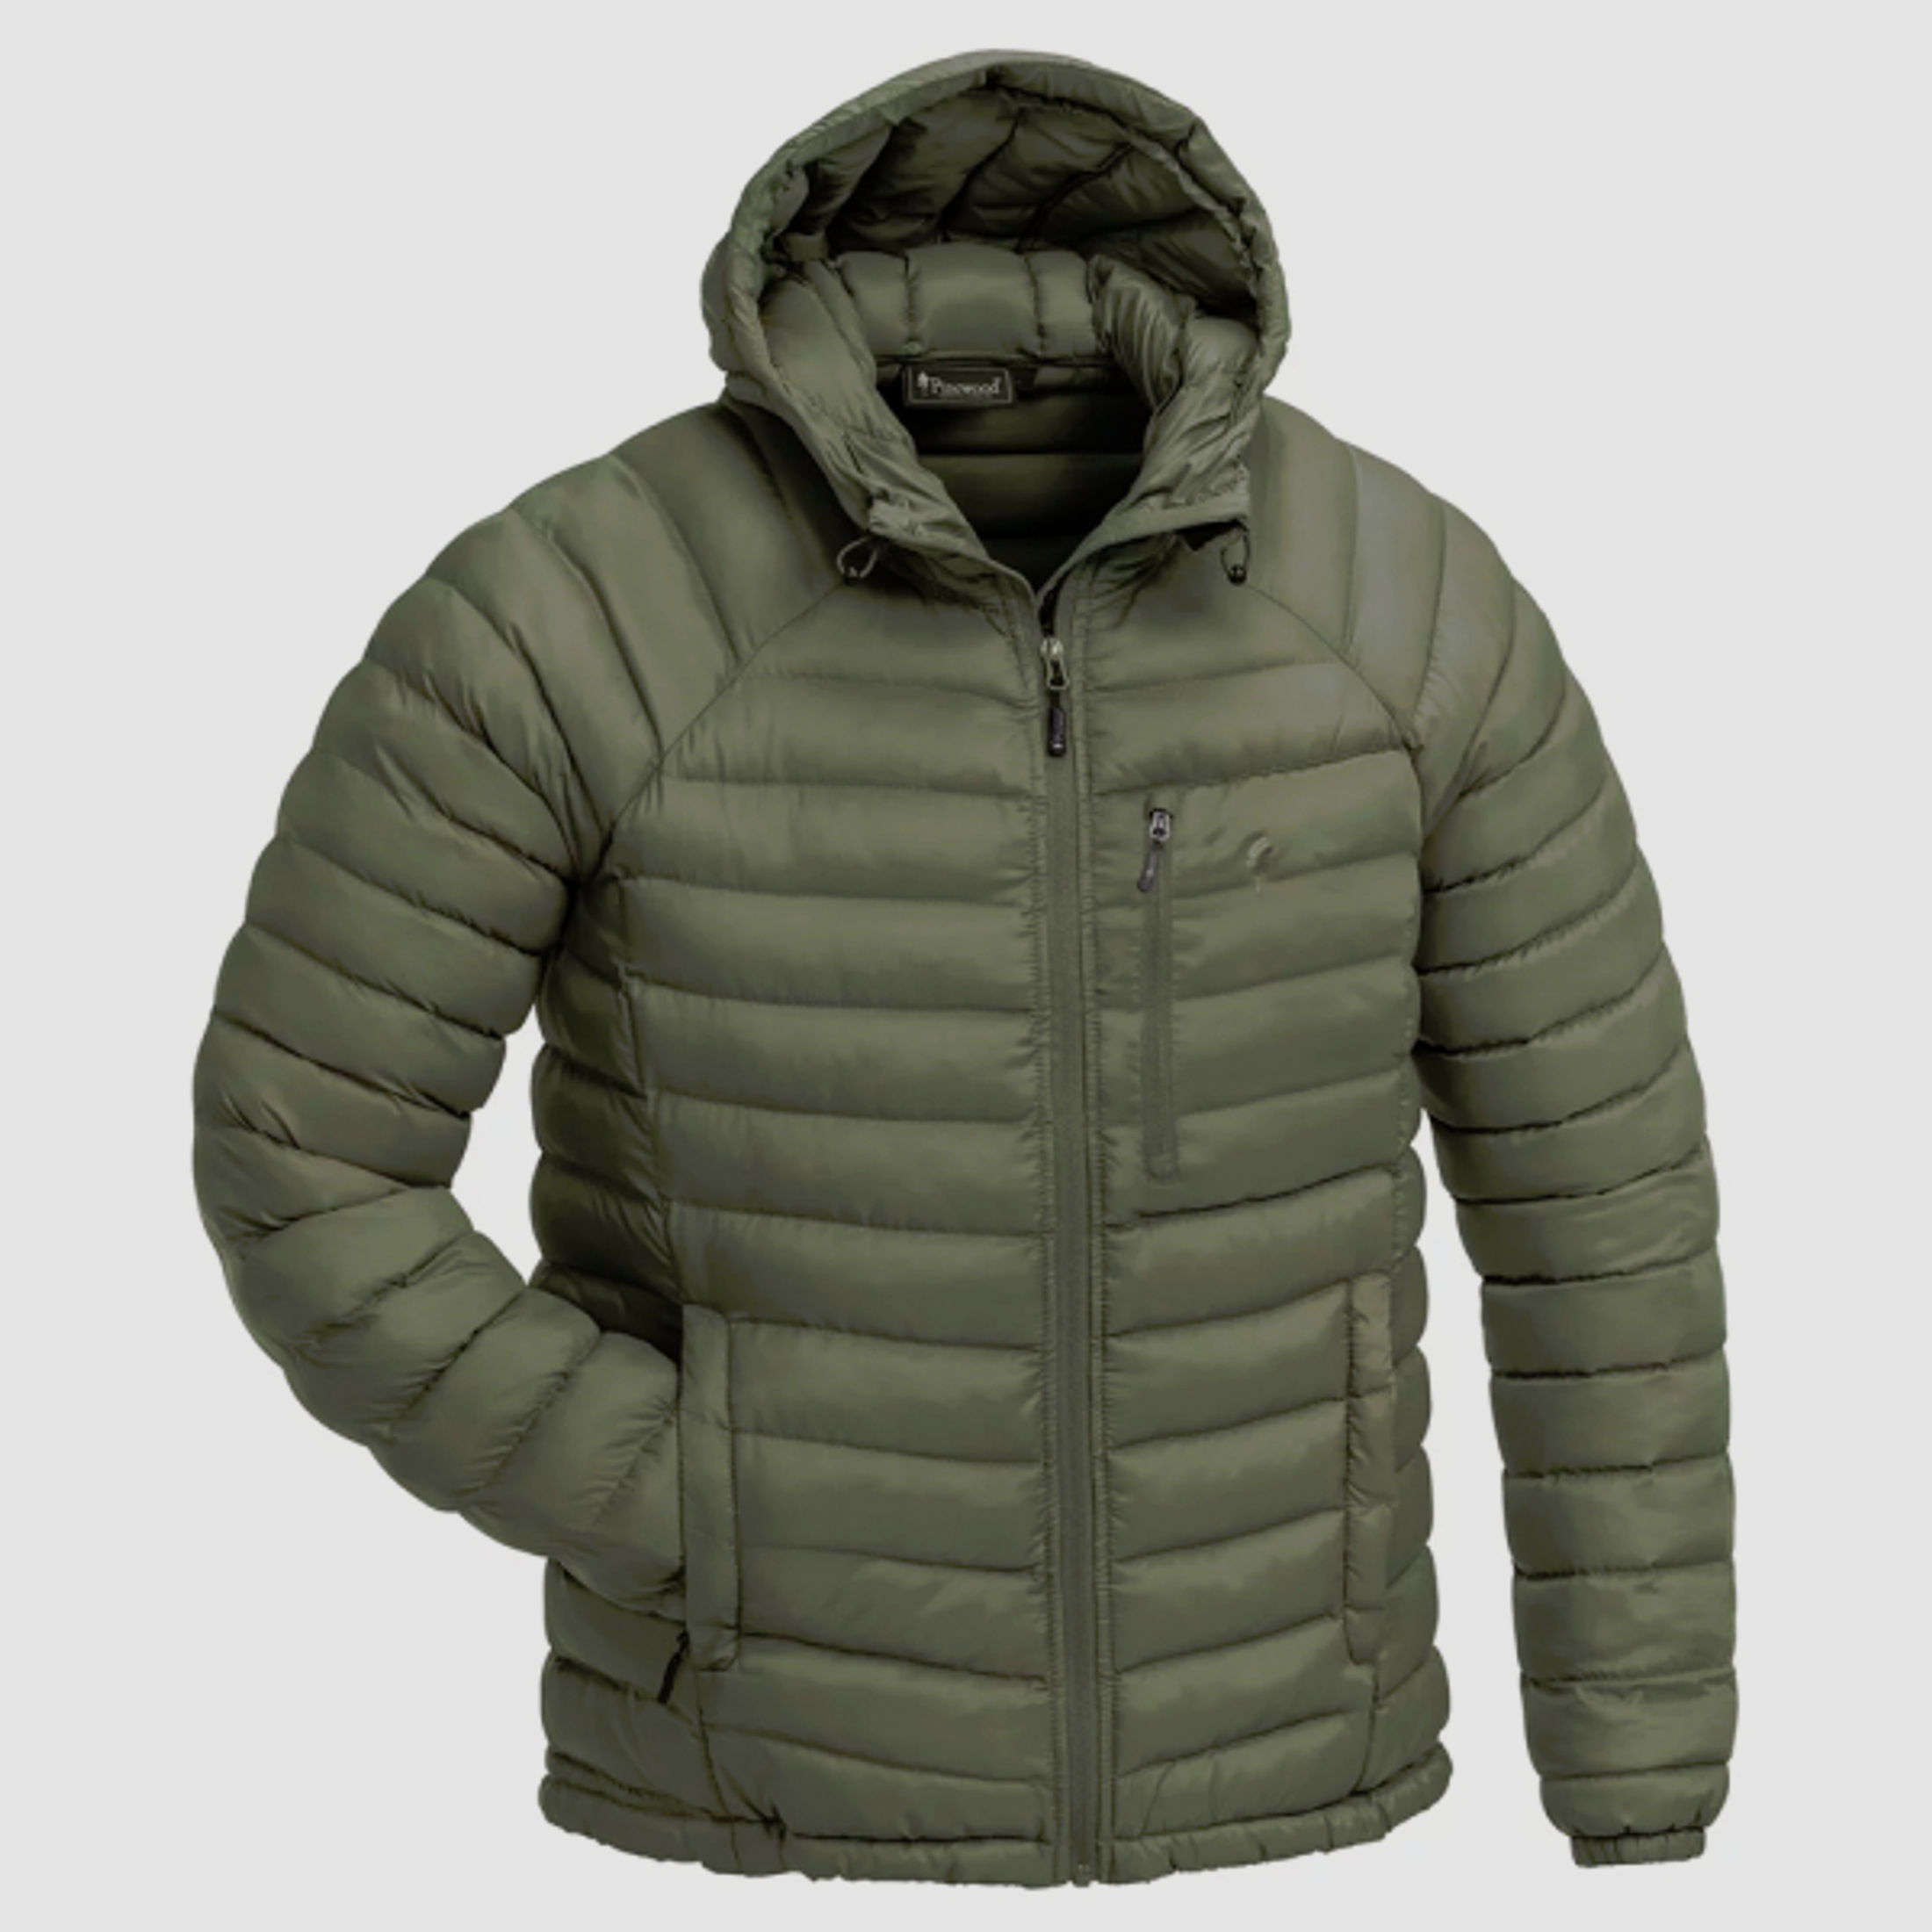 -60% PINEWOOD ABISKO Insulation Jacke 5152 winddichte sehr warme & leichte Jacke Farbe Grün Größe L